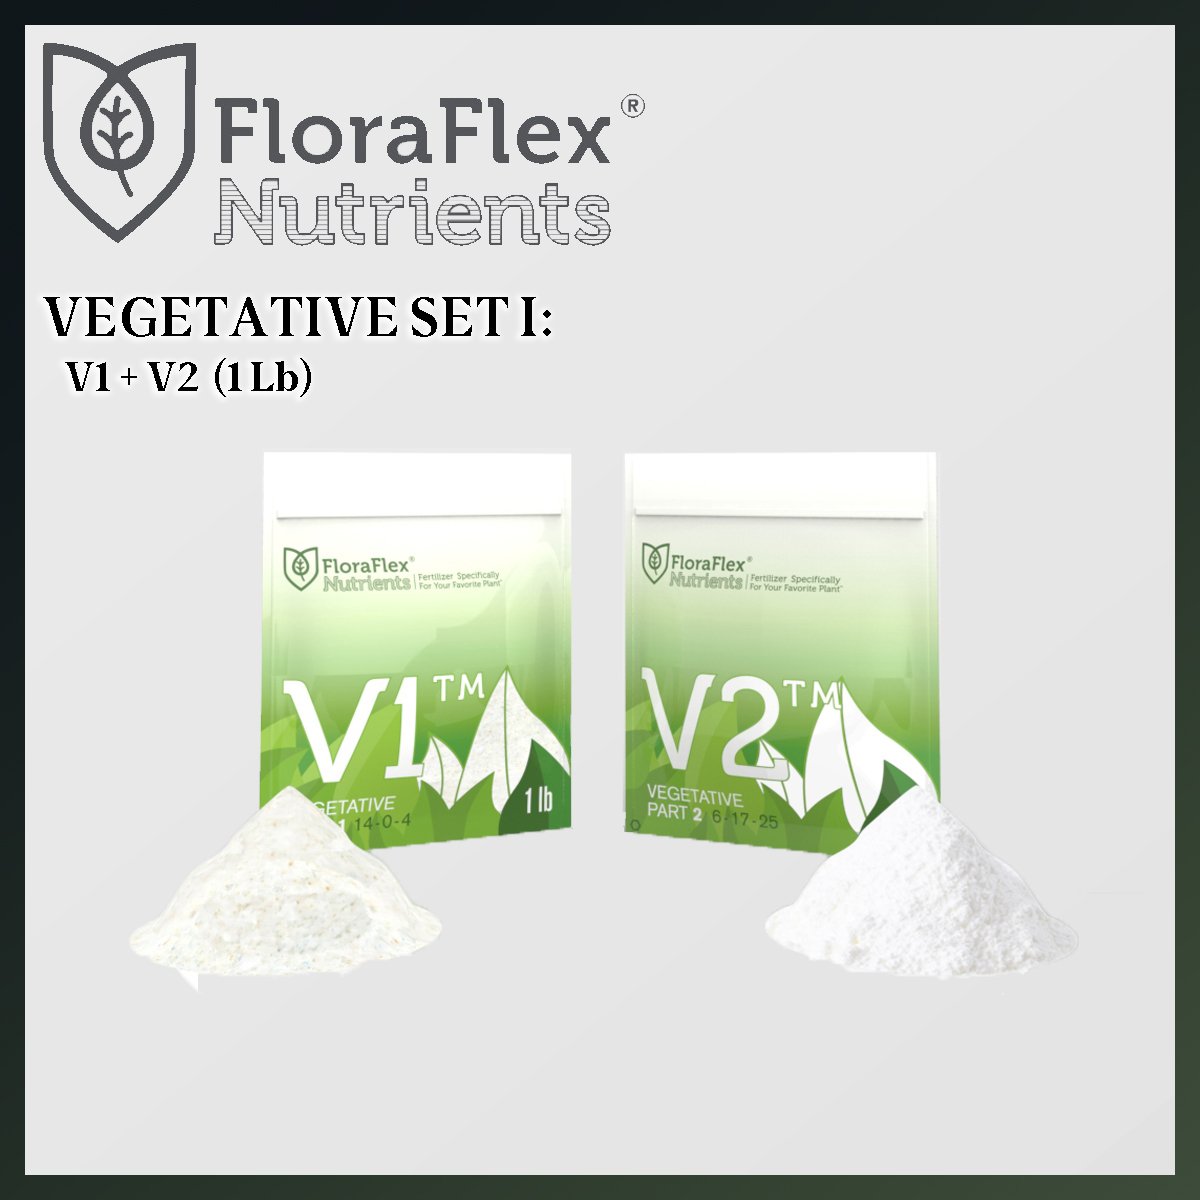 VALUED SET: FLORA FLEX VEGETATIVE V1V2